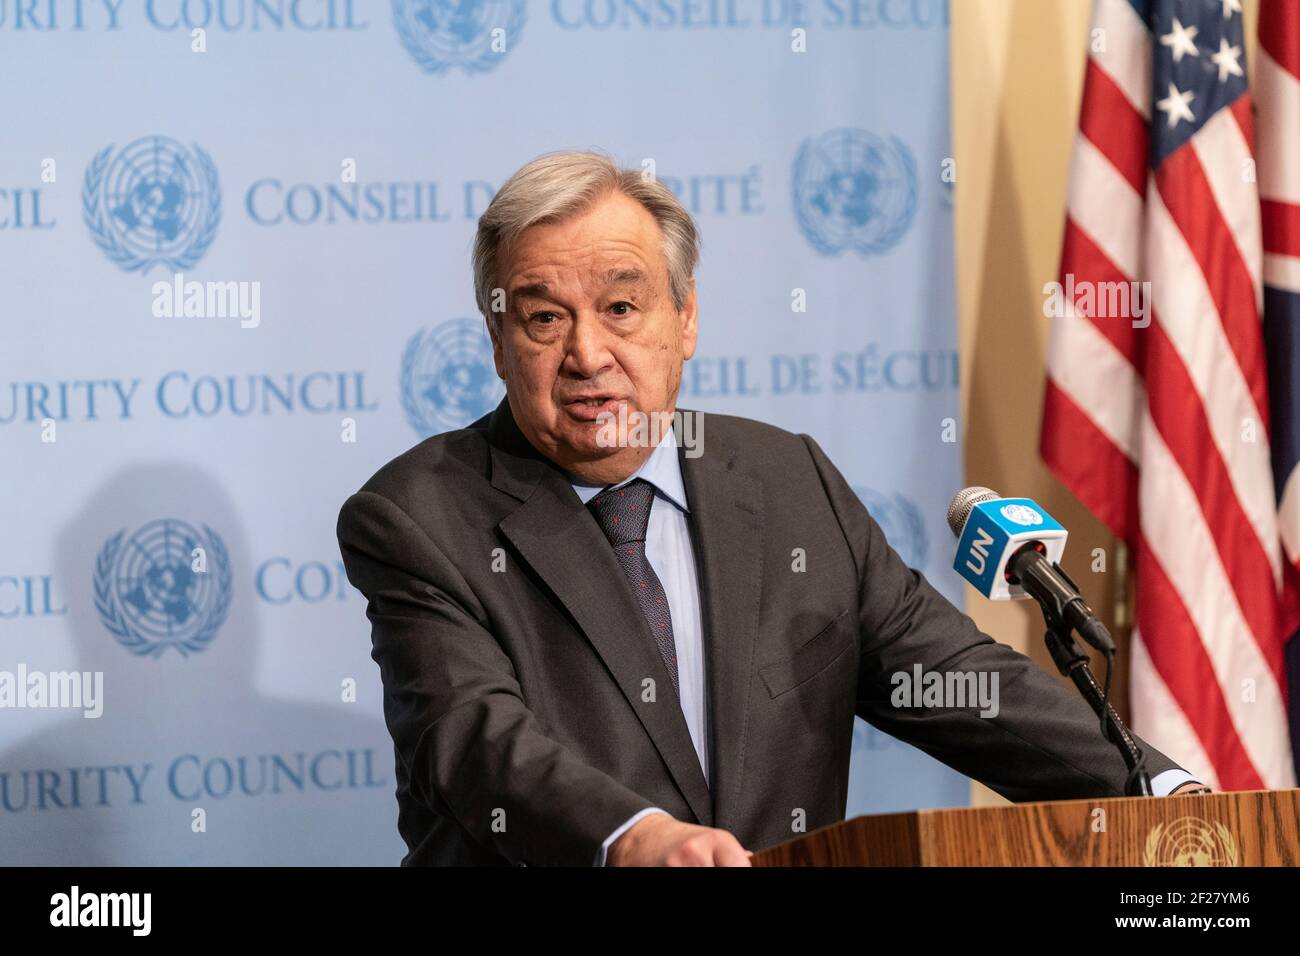 New York, NY - 10 mars 2021: SG Antonio Guterres mène des activités de presse consacrées au 10e anniversaire du conflit syrien au siège de l'ONU Banque D'Images